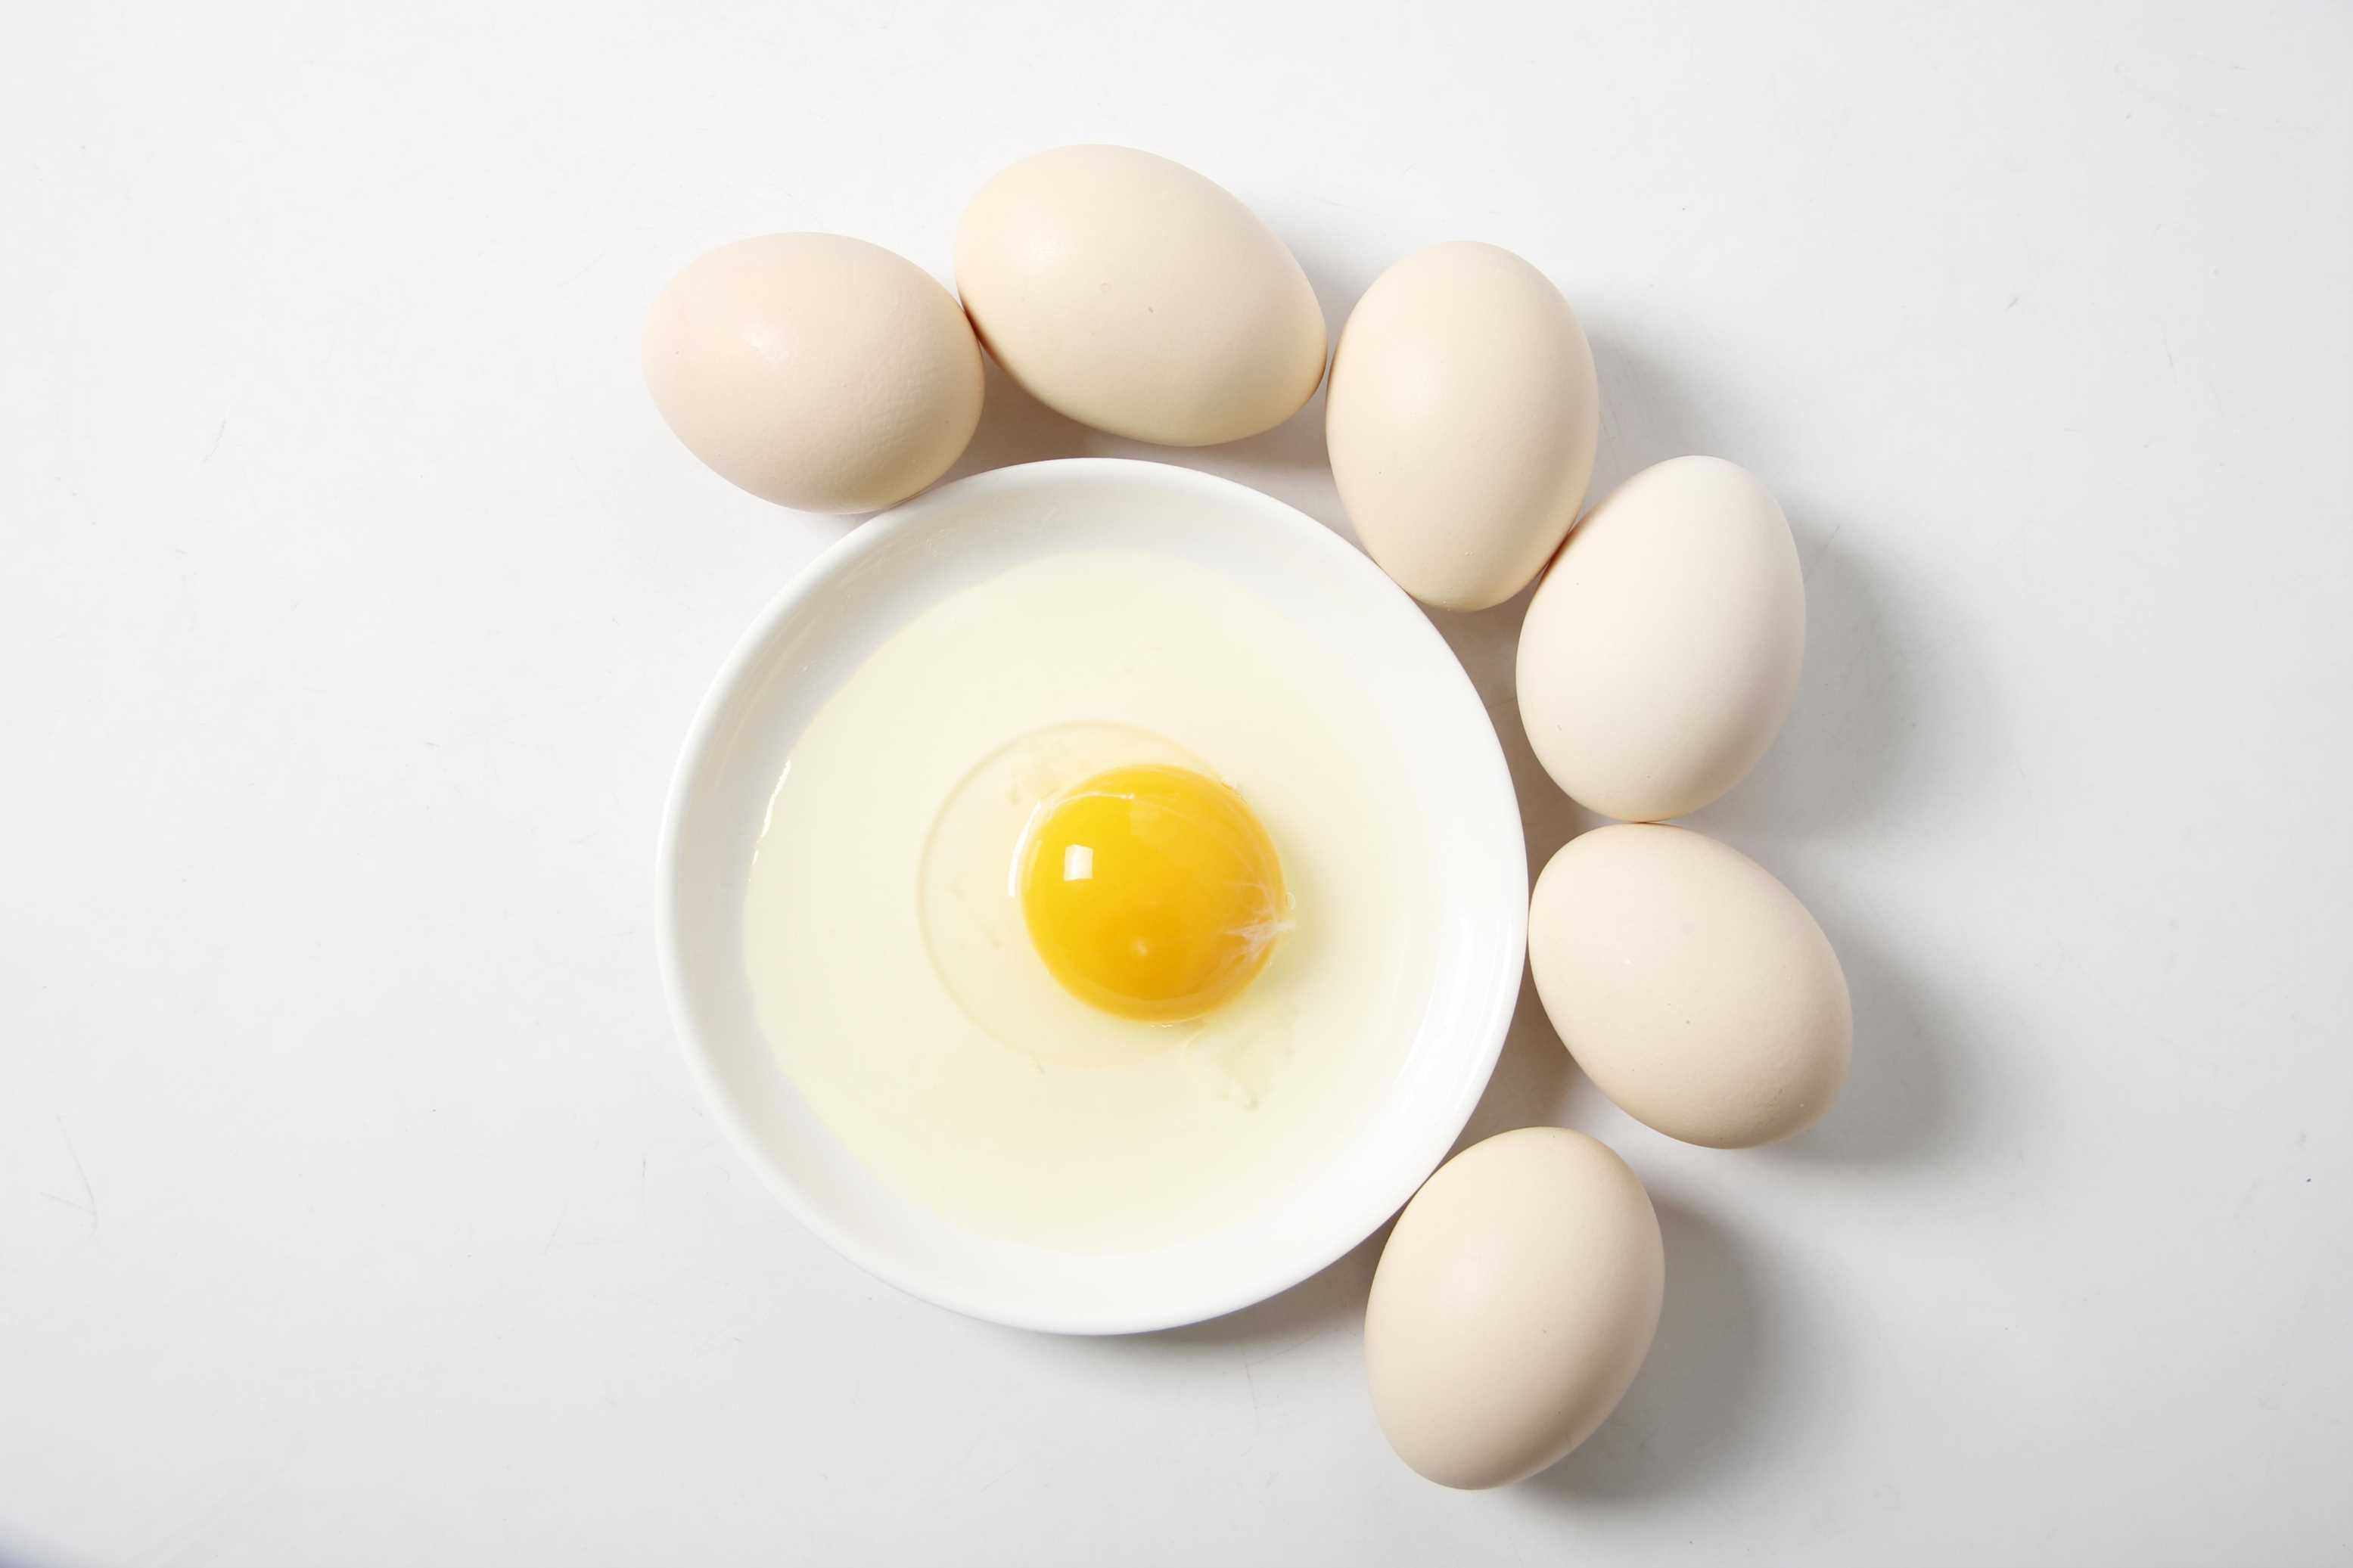 一日三餐，每顿只吃1个鸡蛋能够减肥吗？别拿生命开玩笑